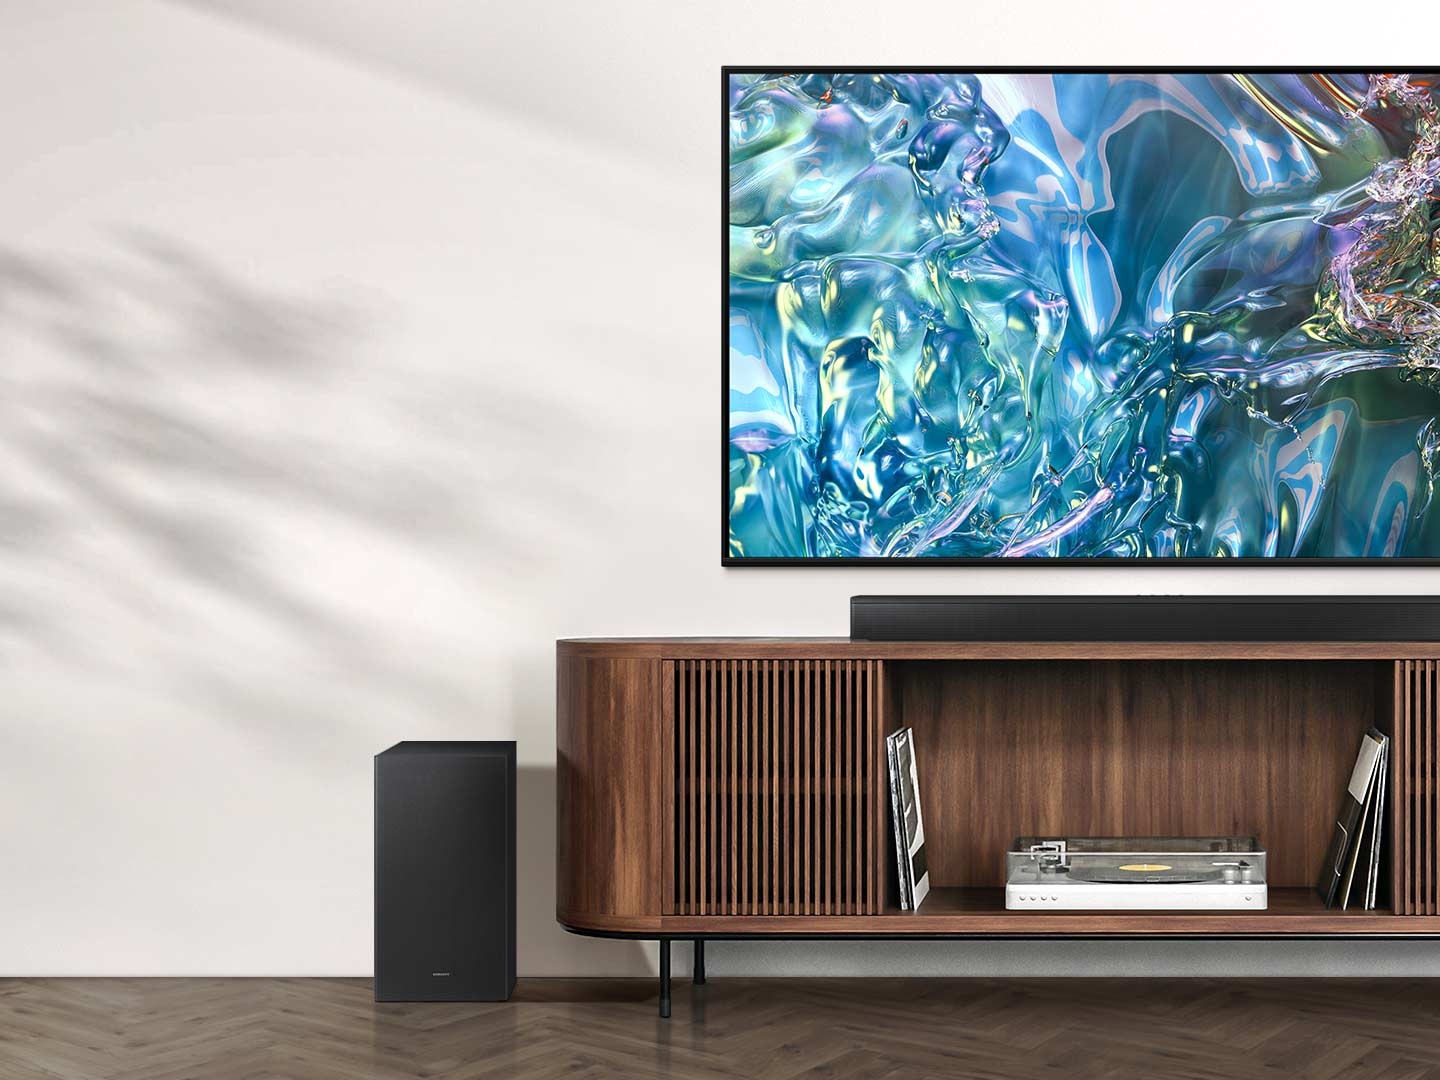 Televizor zobrazuje na obrazovce vzor modré vlny. Pod ním je TV stolek se Soundbarem nahoře a subwooferem po straně.